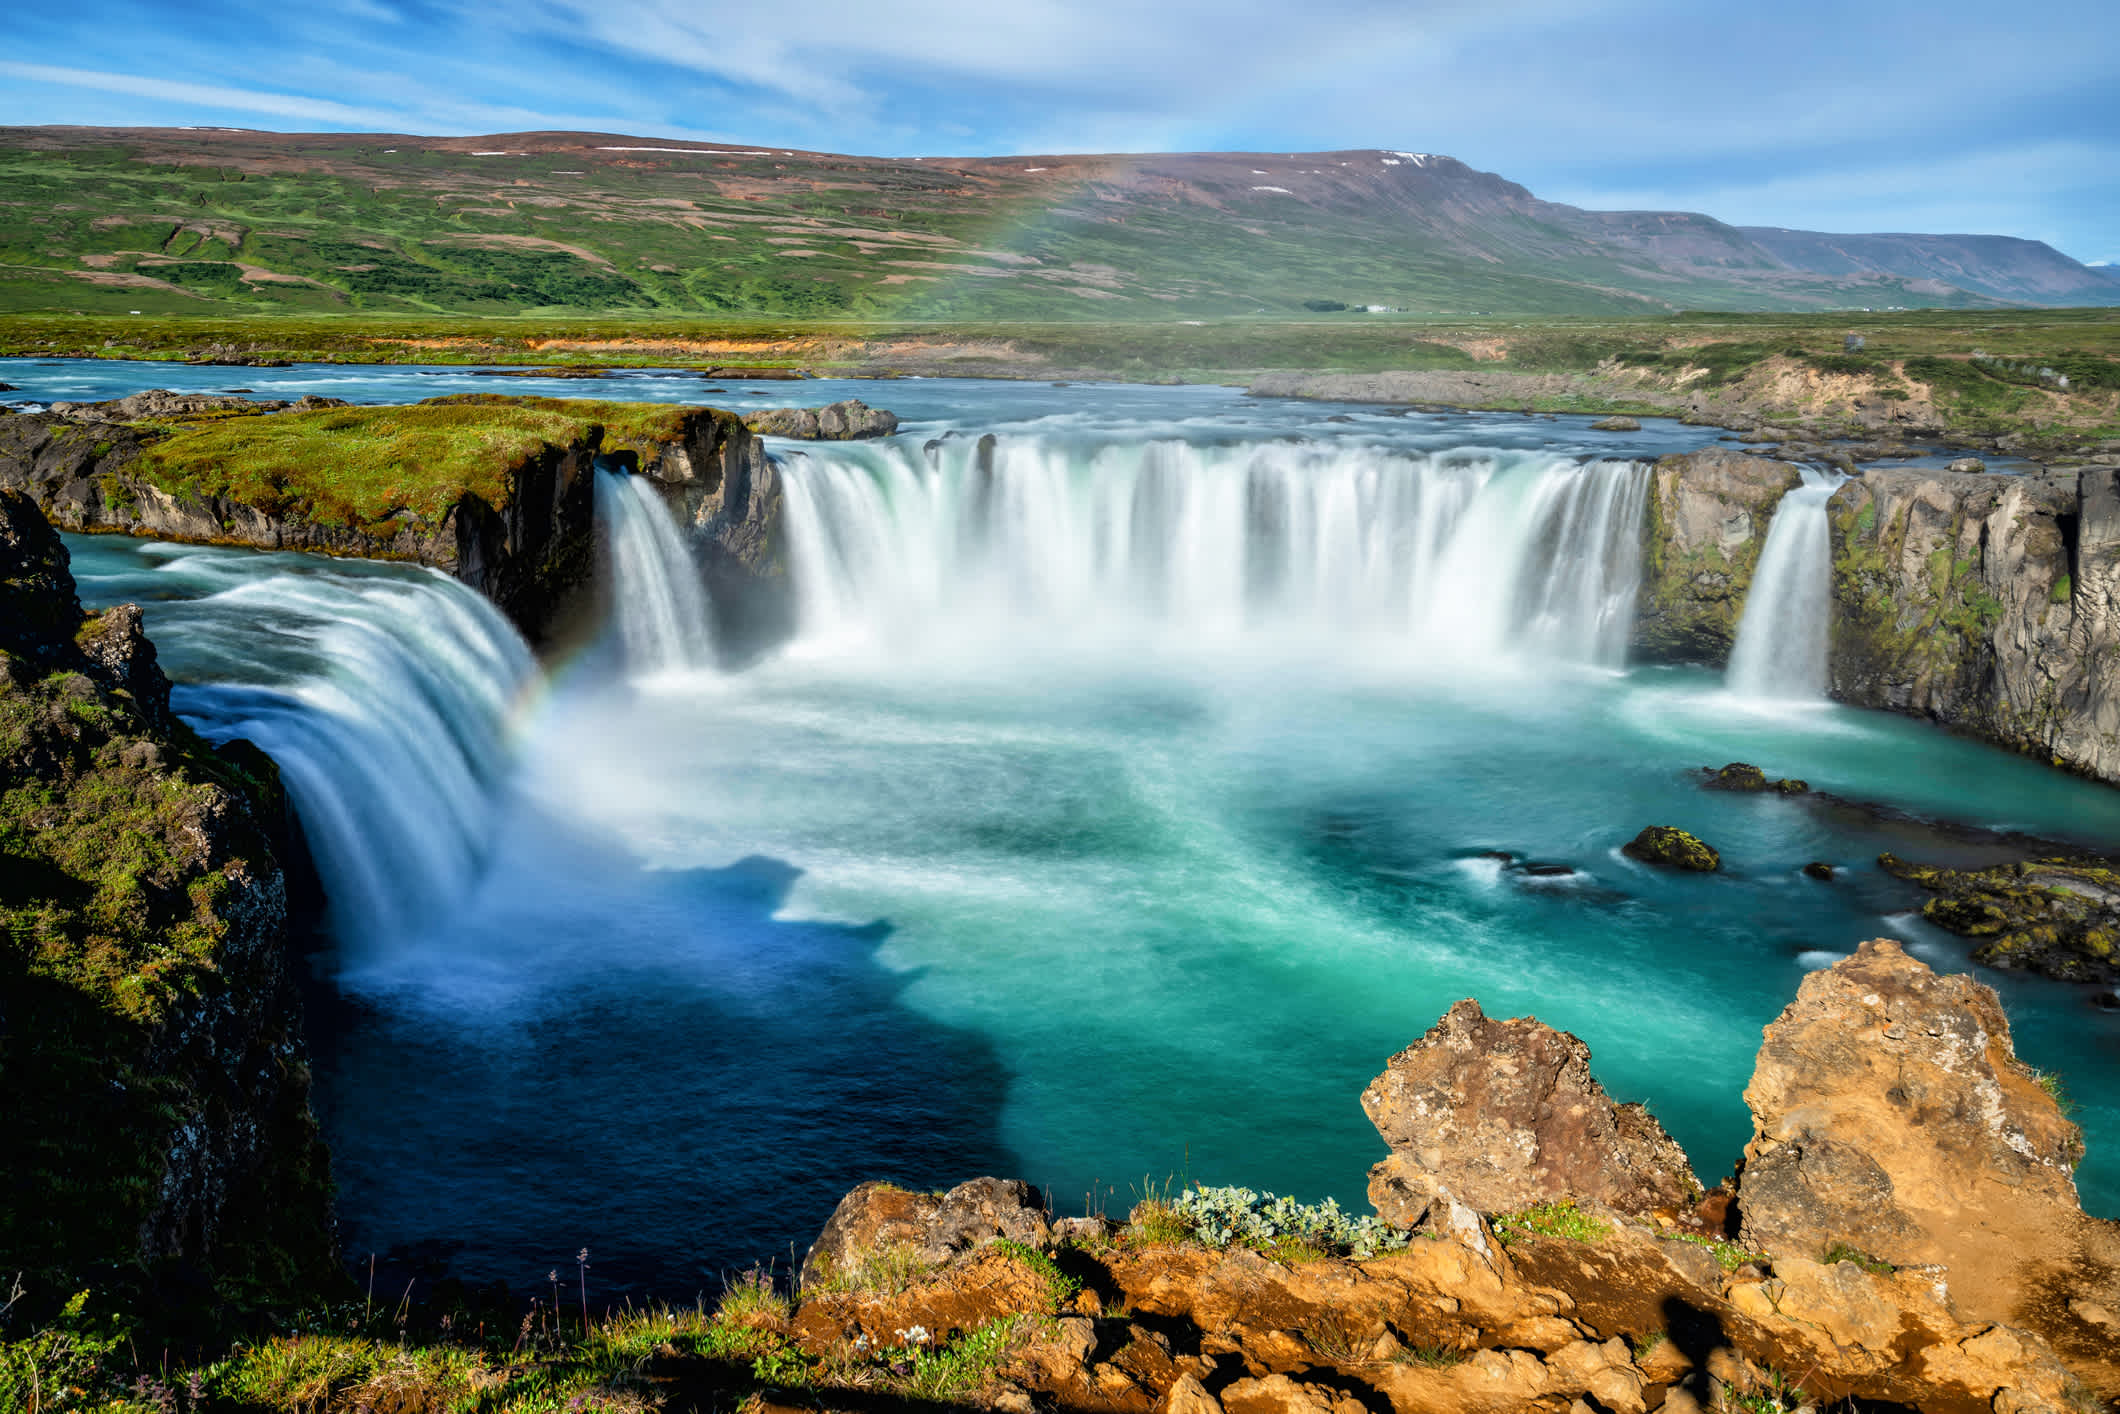 Chute d'eau de Godafoss dans la célèbre région du Cercle d'or de l'Islande.